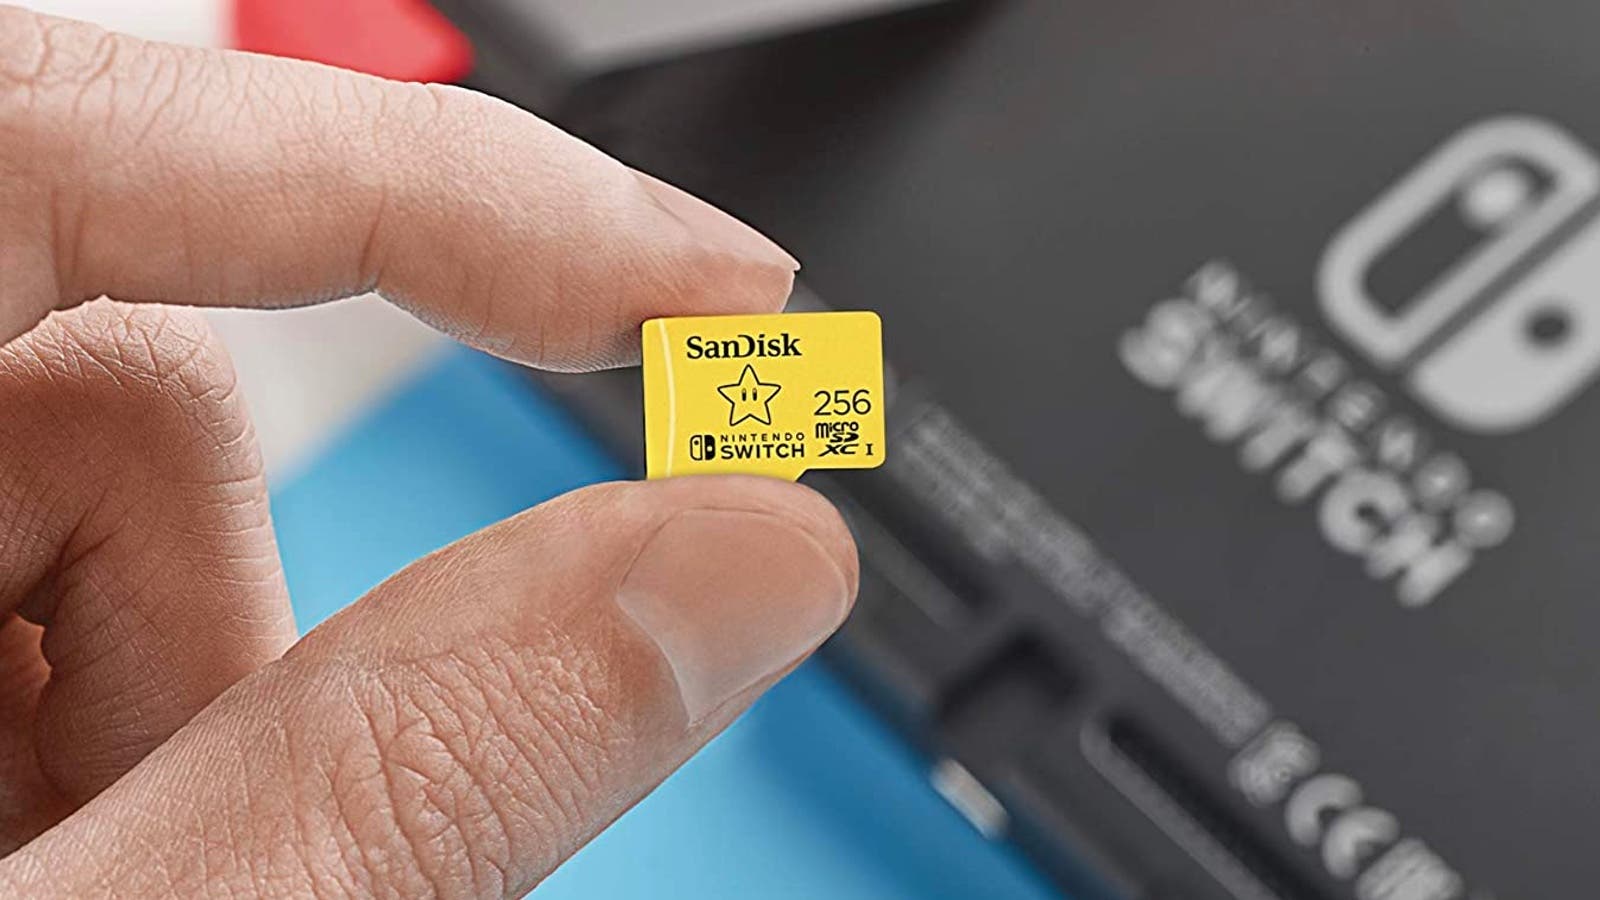 Amplía la memoria de tu Nintendo Switch a 256 GB con esta tarjeta SD por solo 30 euros